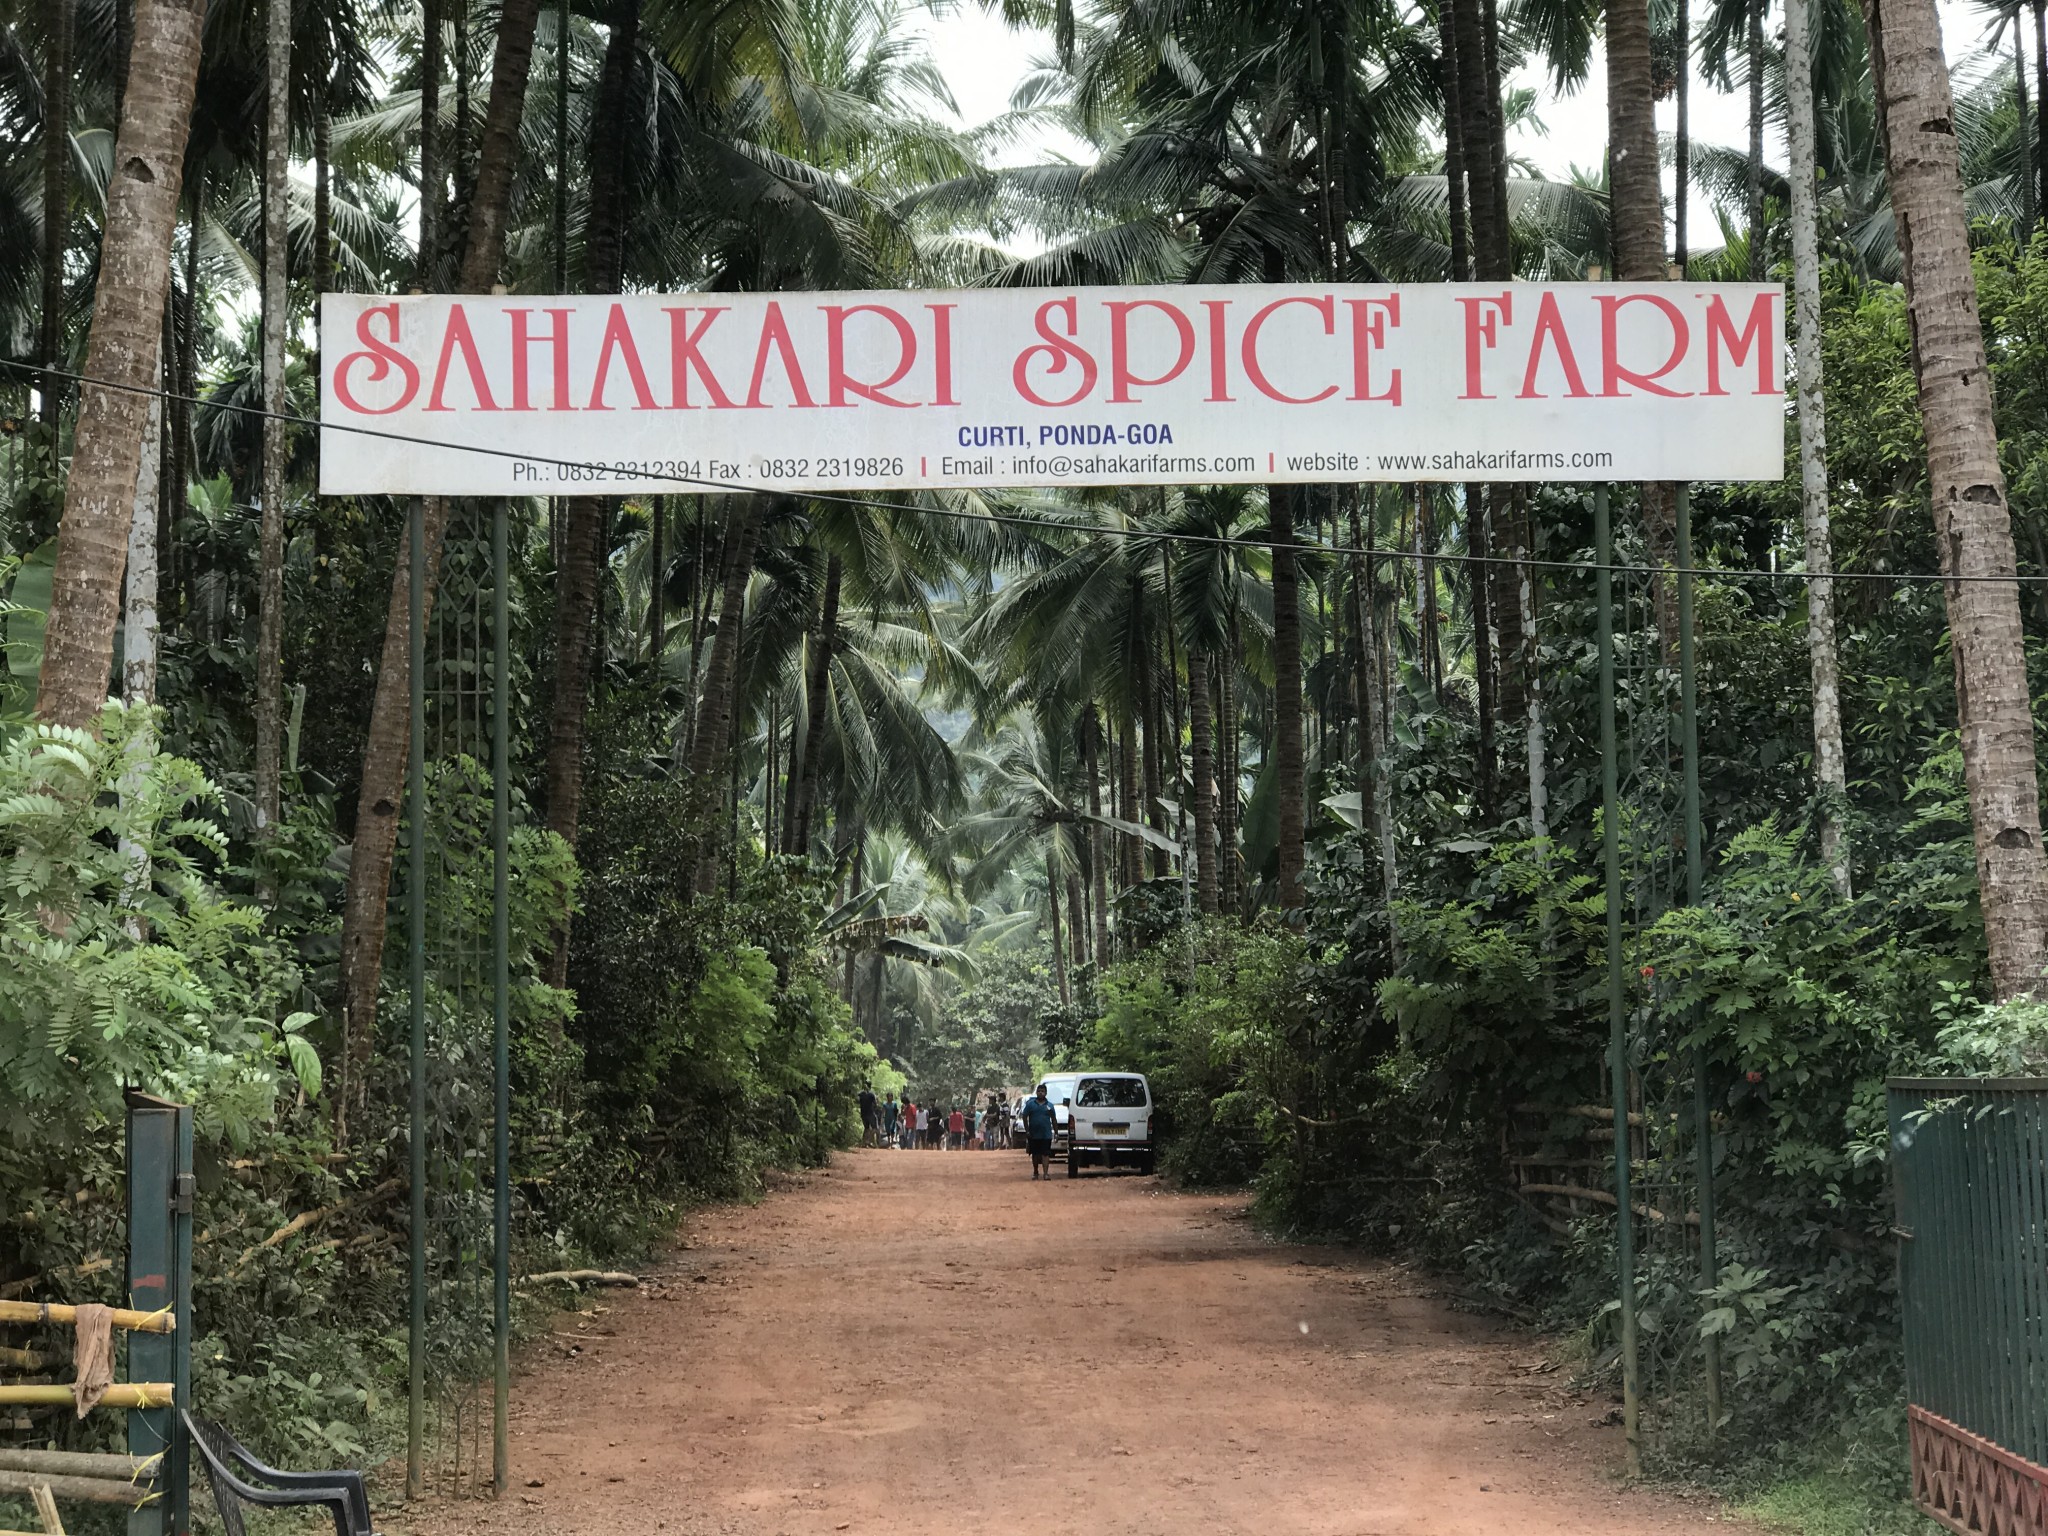 Sahakari Spice farm